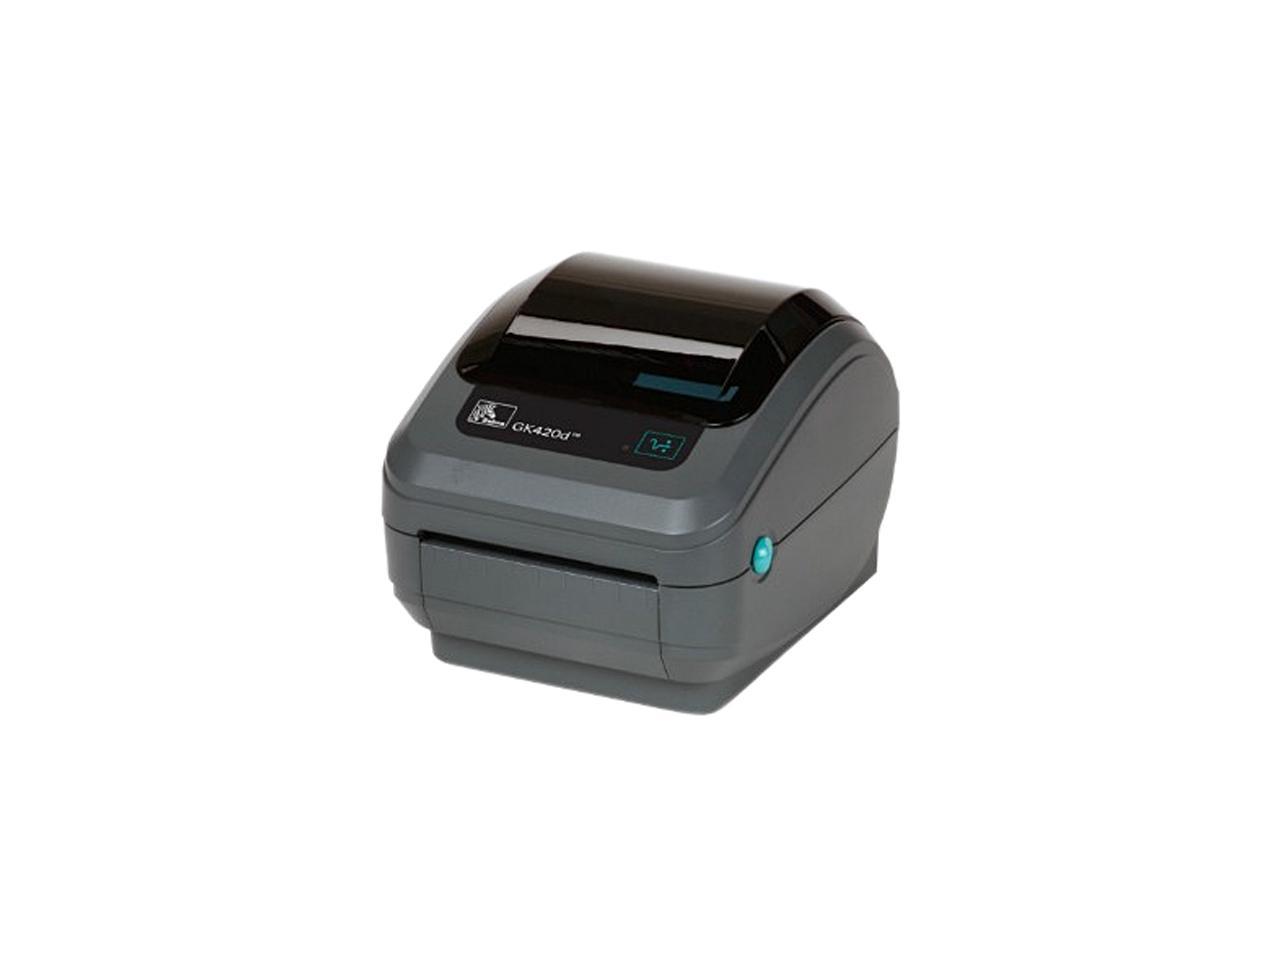 Zebra ZD-421 label printer